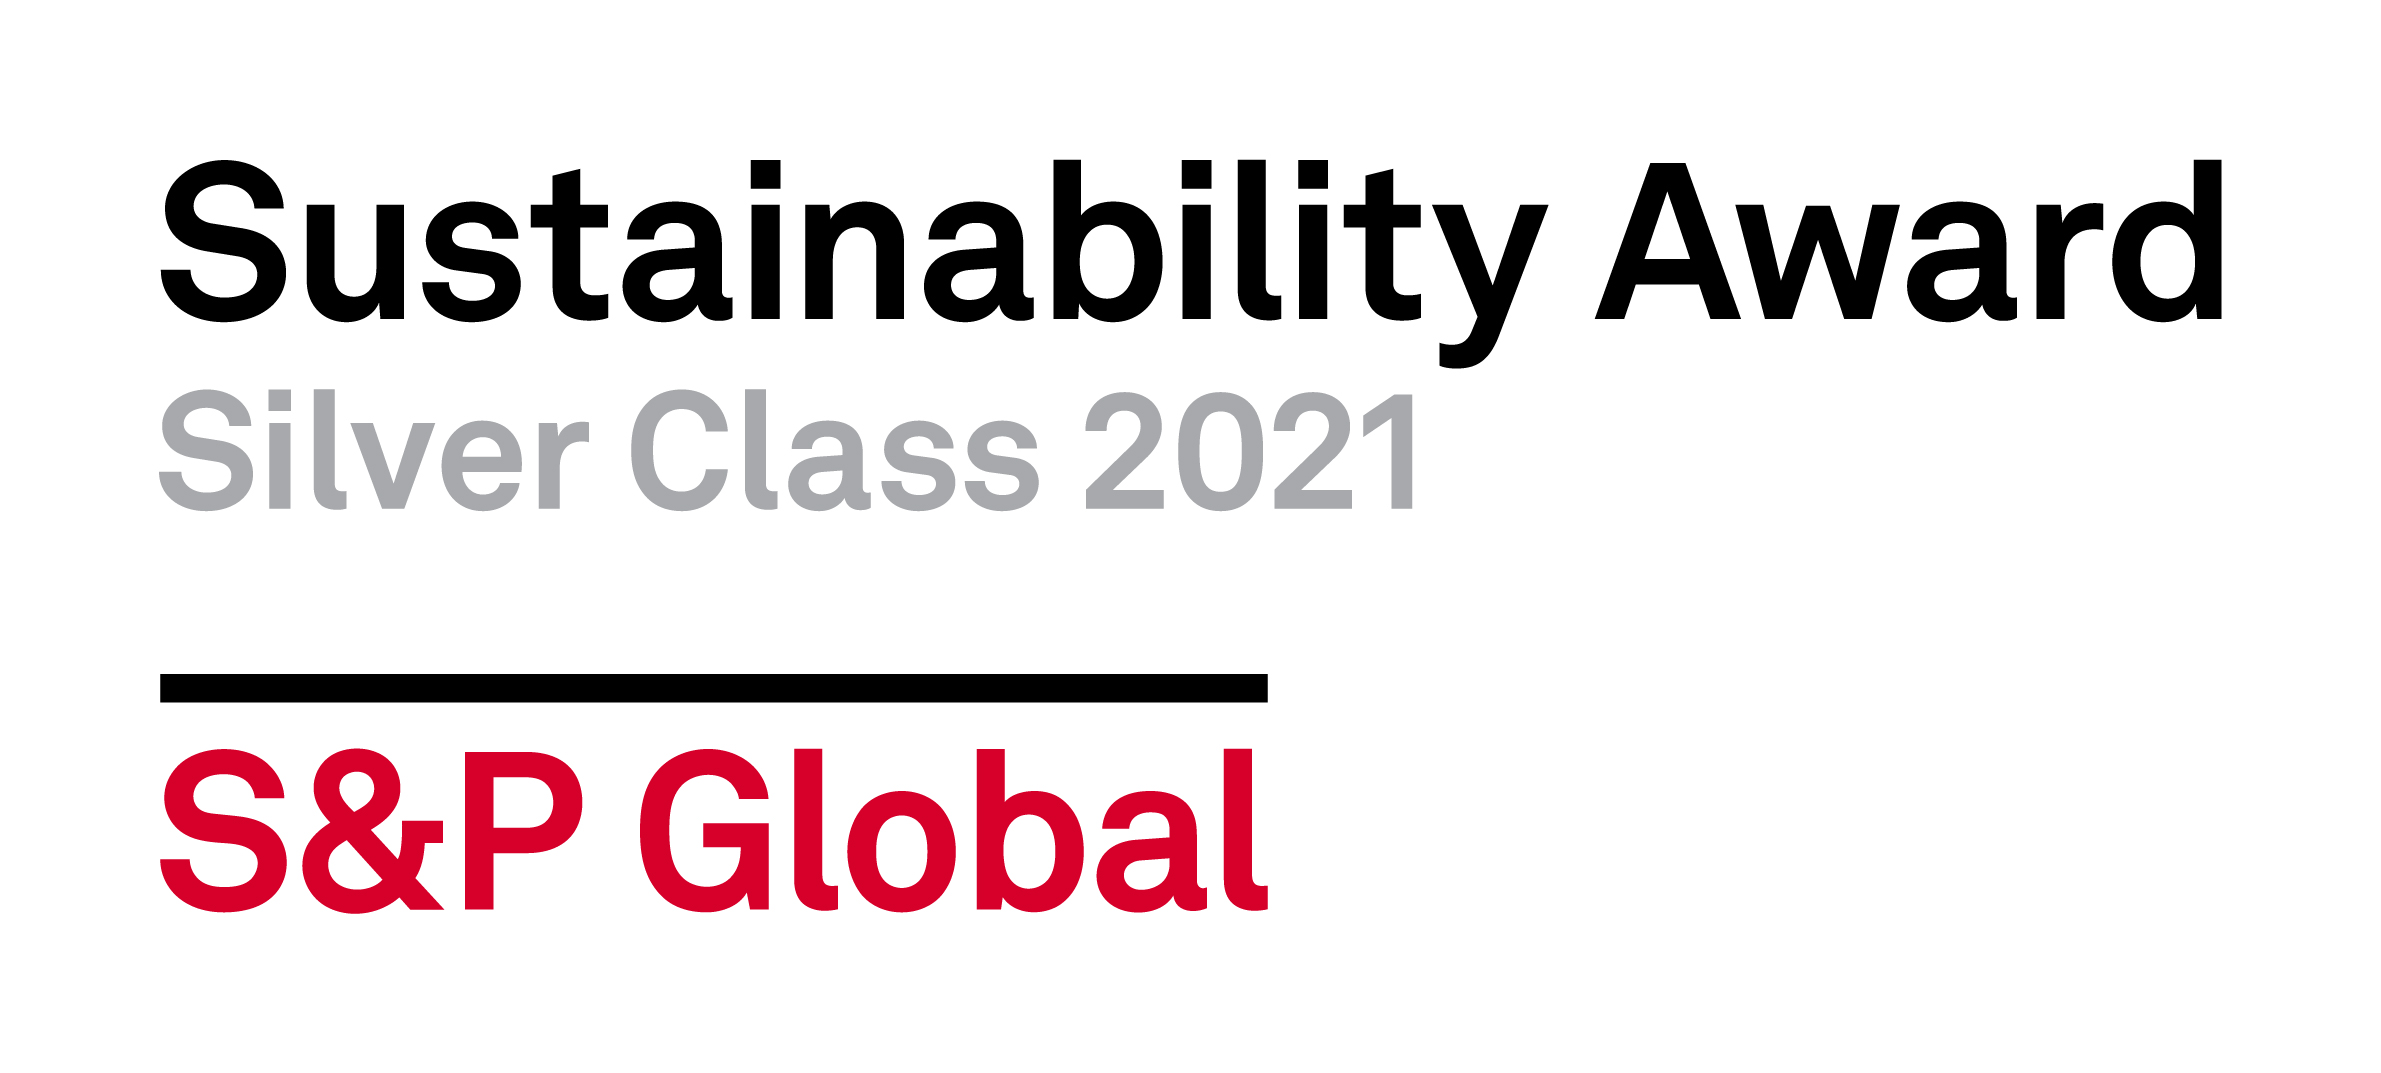 Компания Ricoh удостоена награды серебряного класса в ежегоднике устойчивого развития 2021, подготовленного мадиахолдингом S&P Global